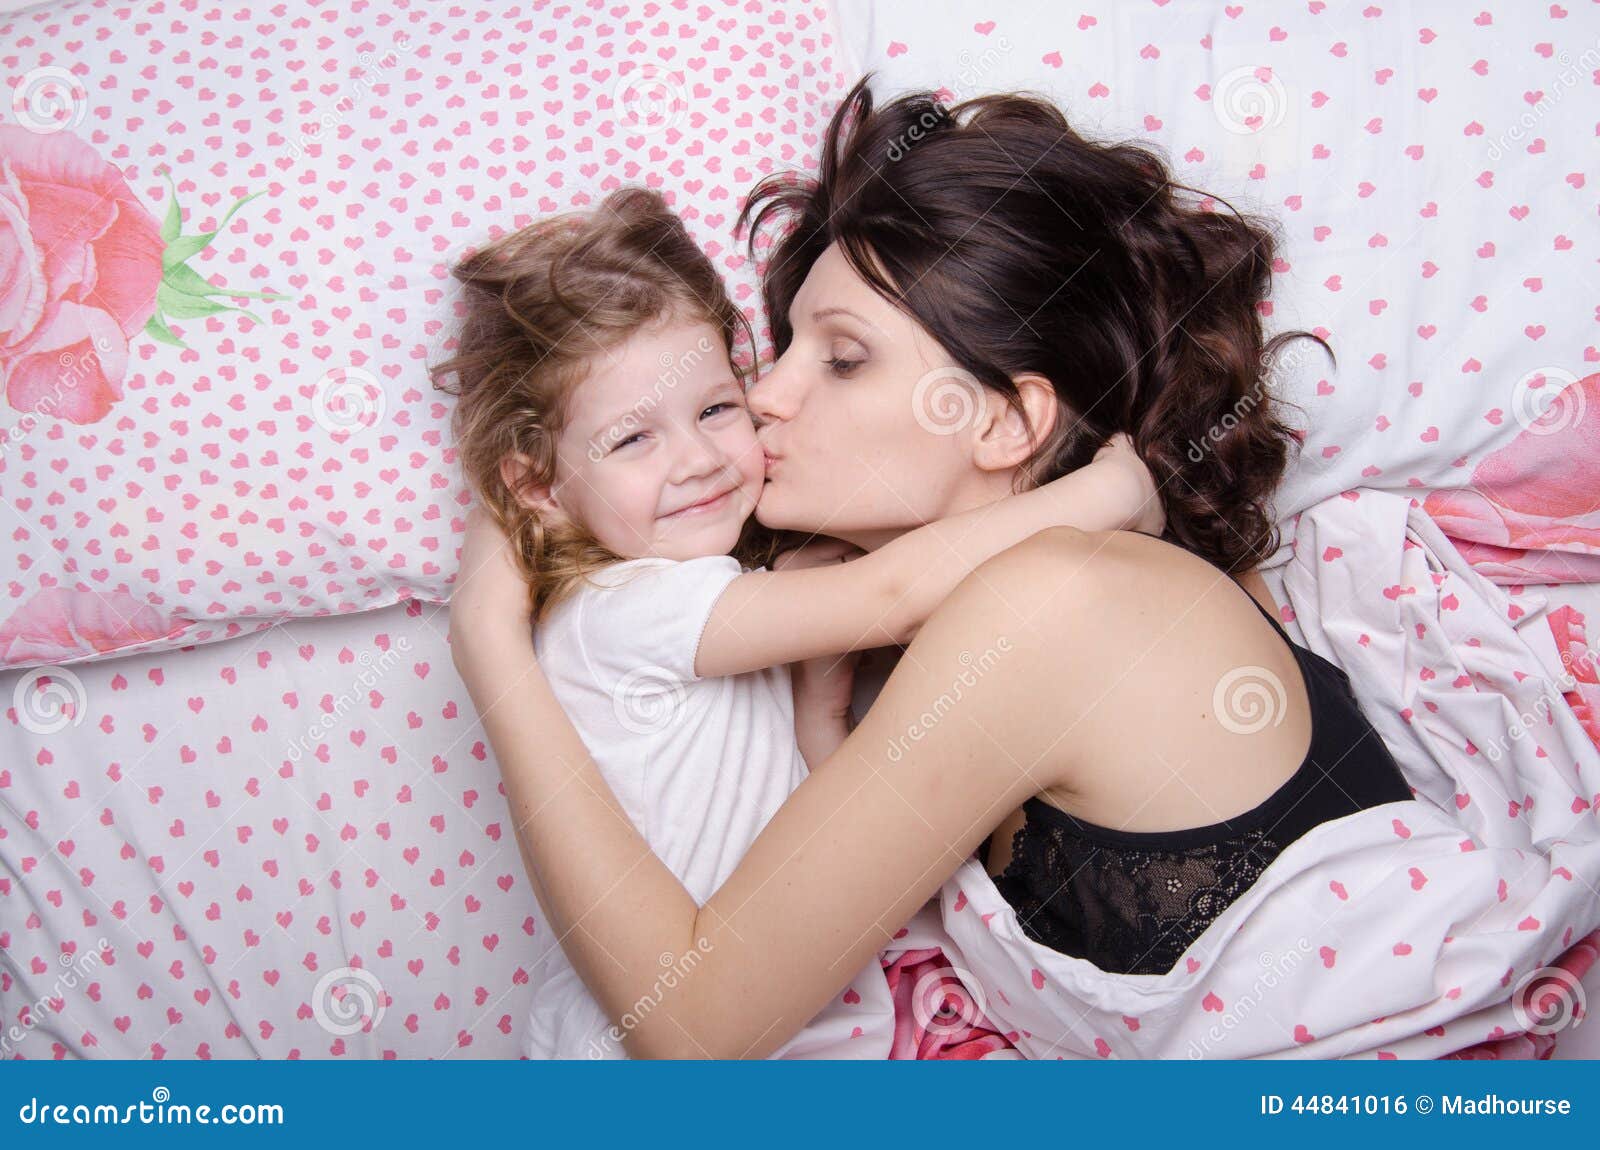 Мама с дочкой в постели. Мама целует дочку. Мама с дочкой уснули. Мама с дочкой на кровати. С дочей в кровати.